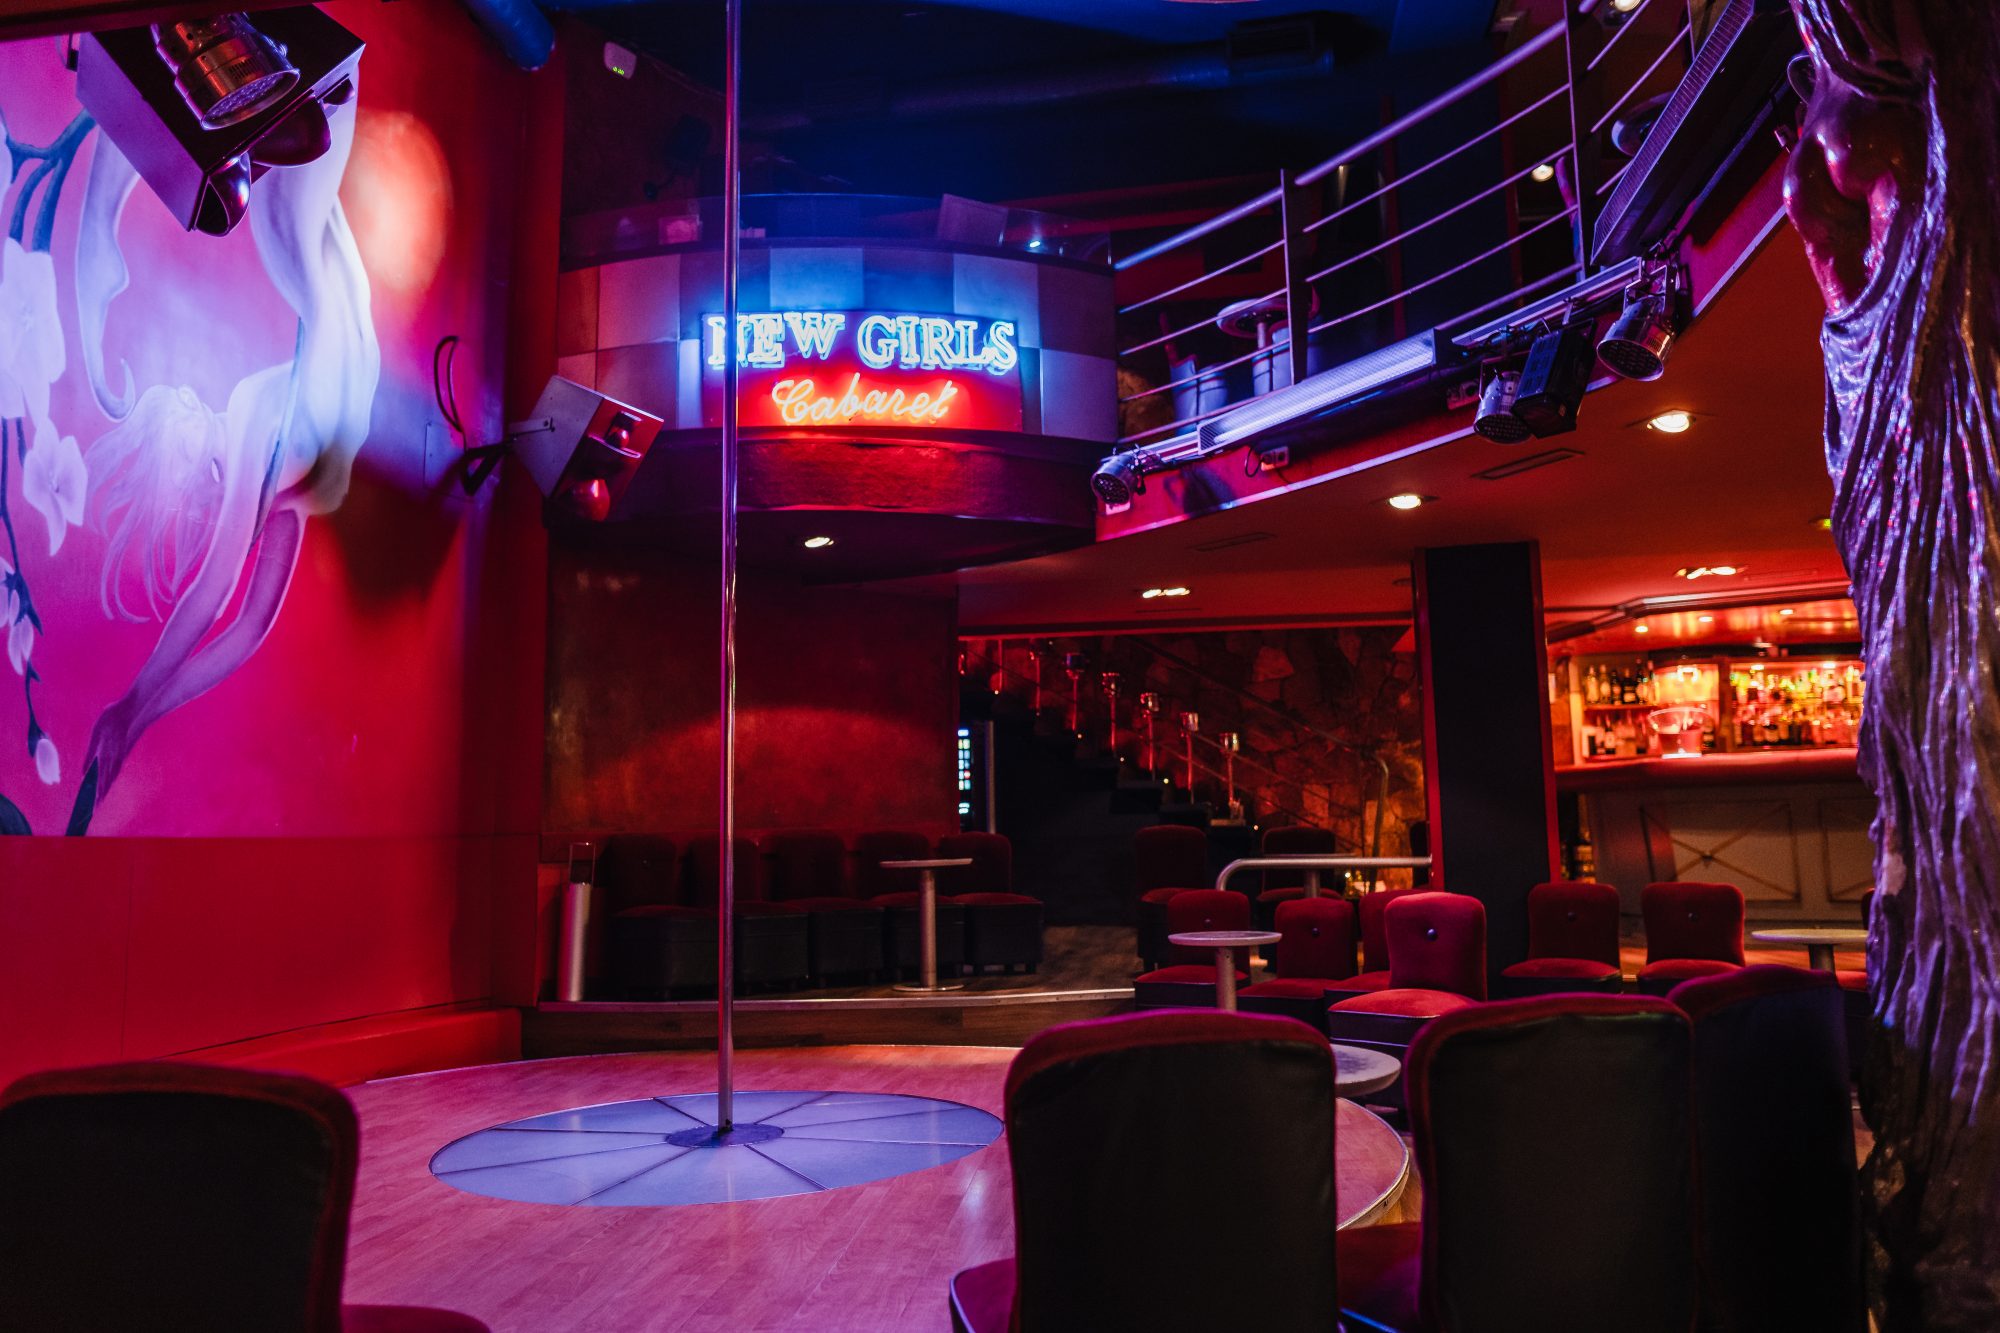 Best strip clubs in denver 👉 👌 Best Gentlemen's Club in Denv